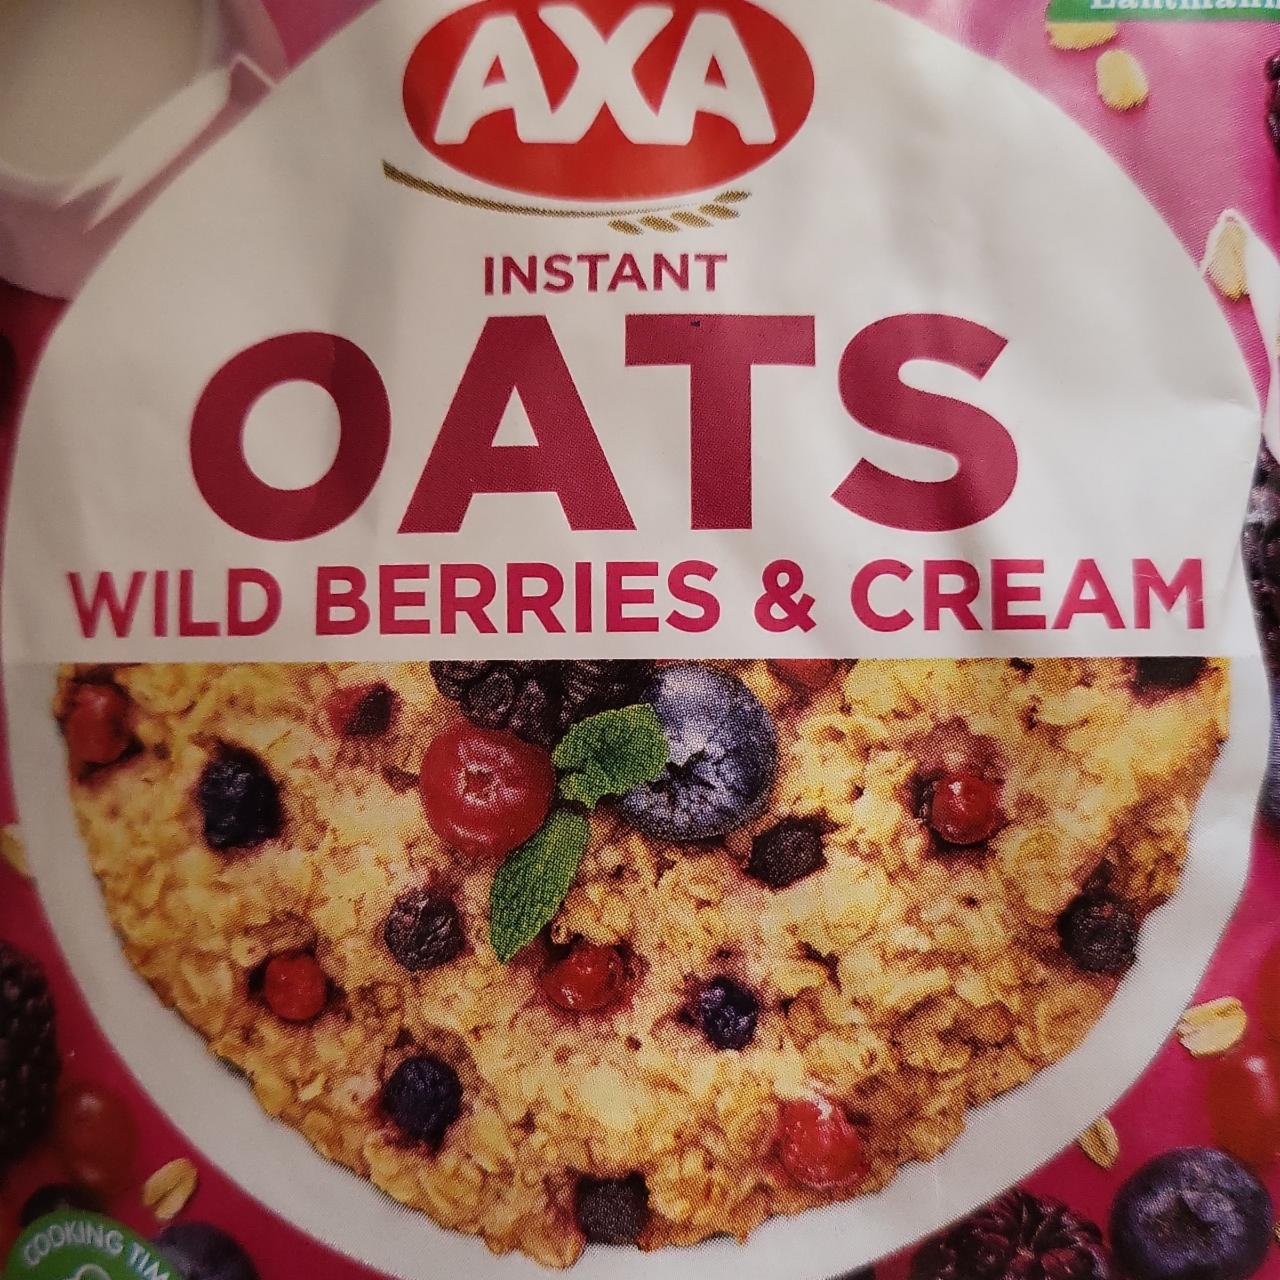 Фото - Каша вівсяна з вершками і лісовими ягодами Wild Berries & Cream Oats Axa